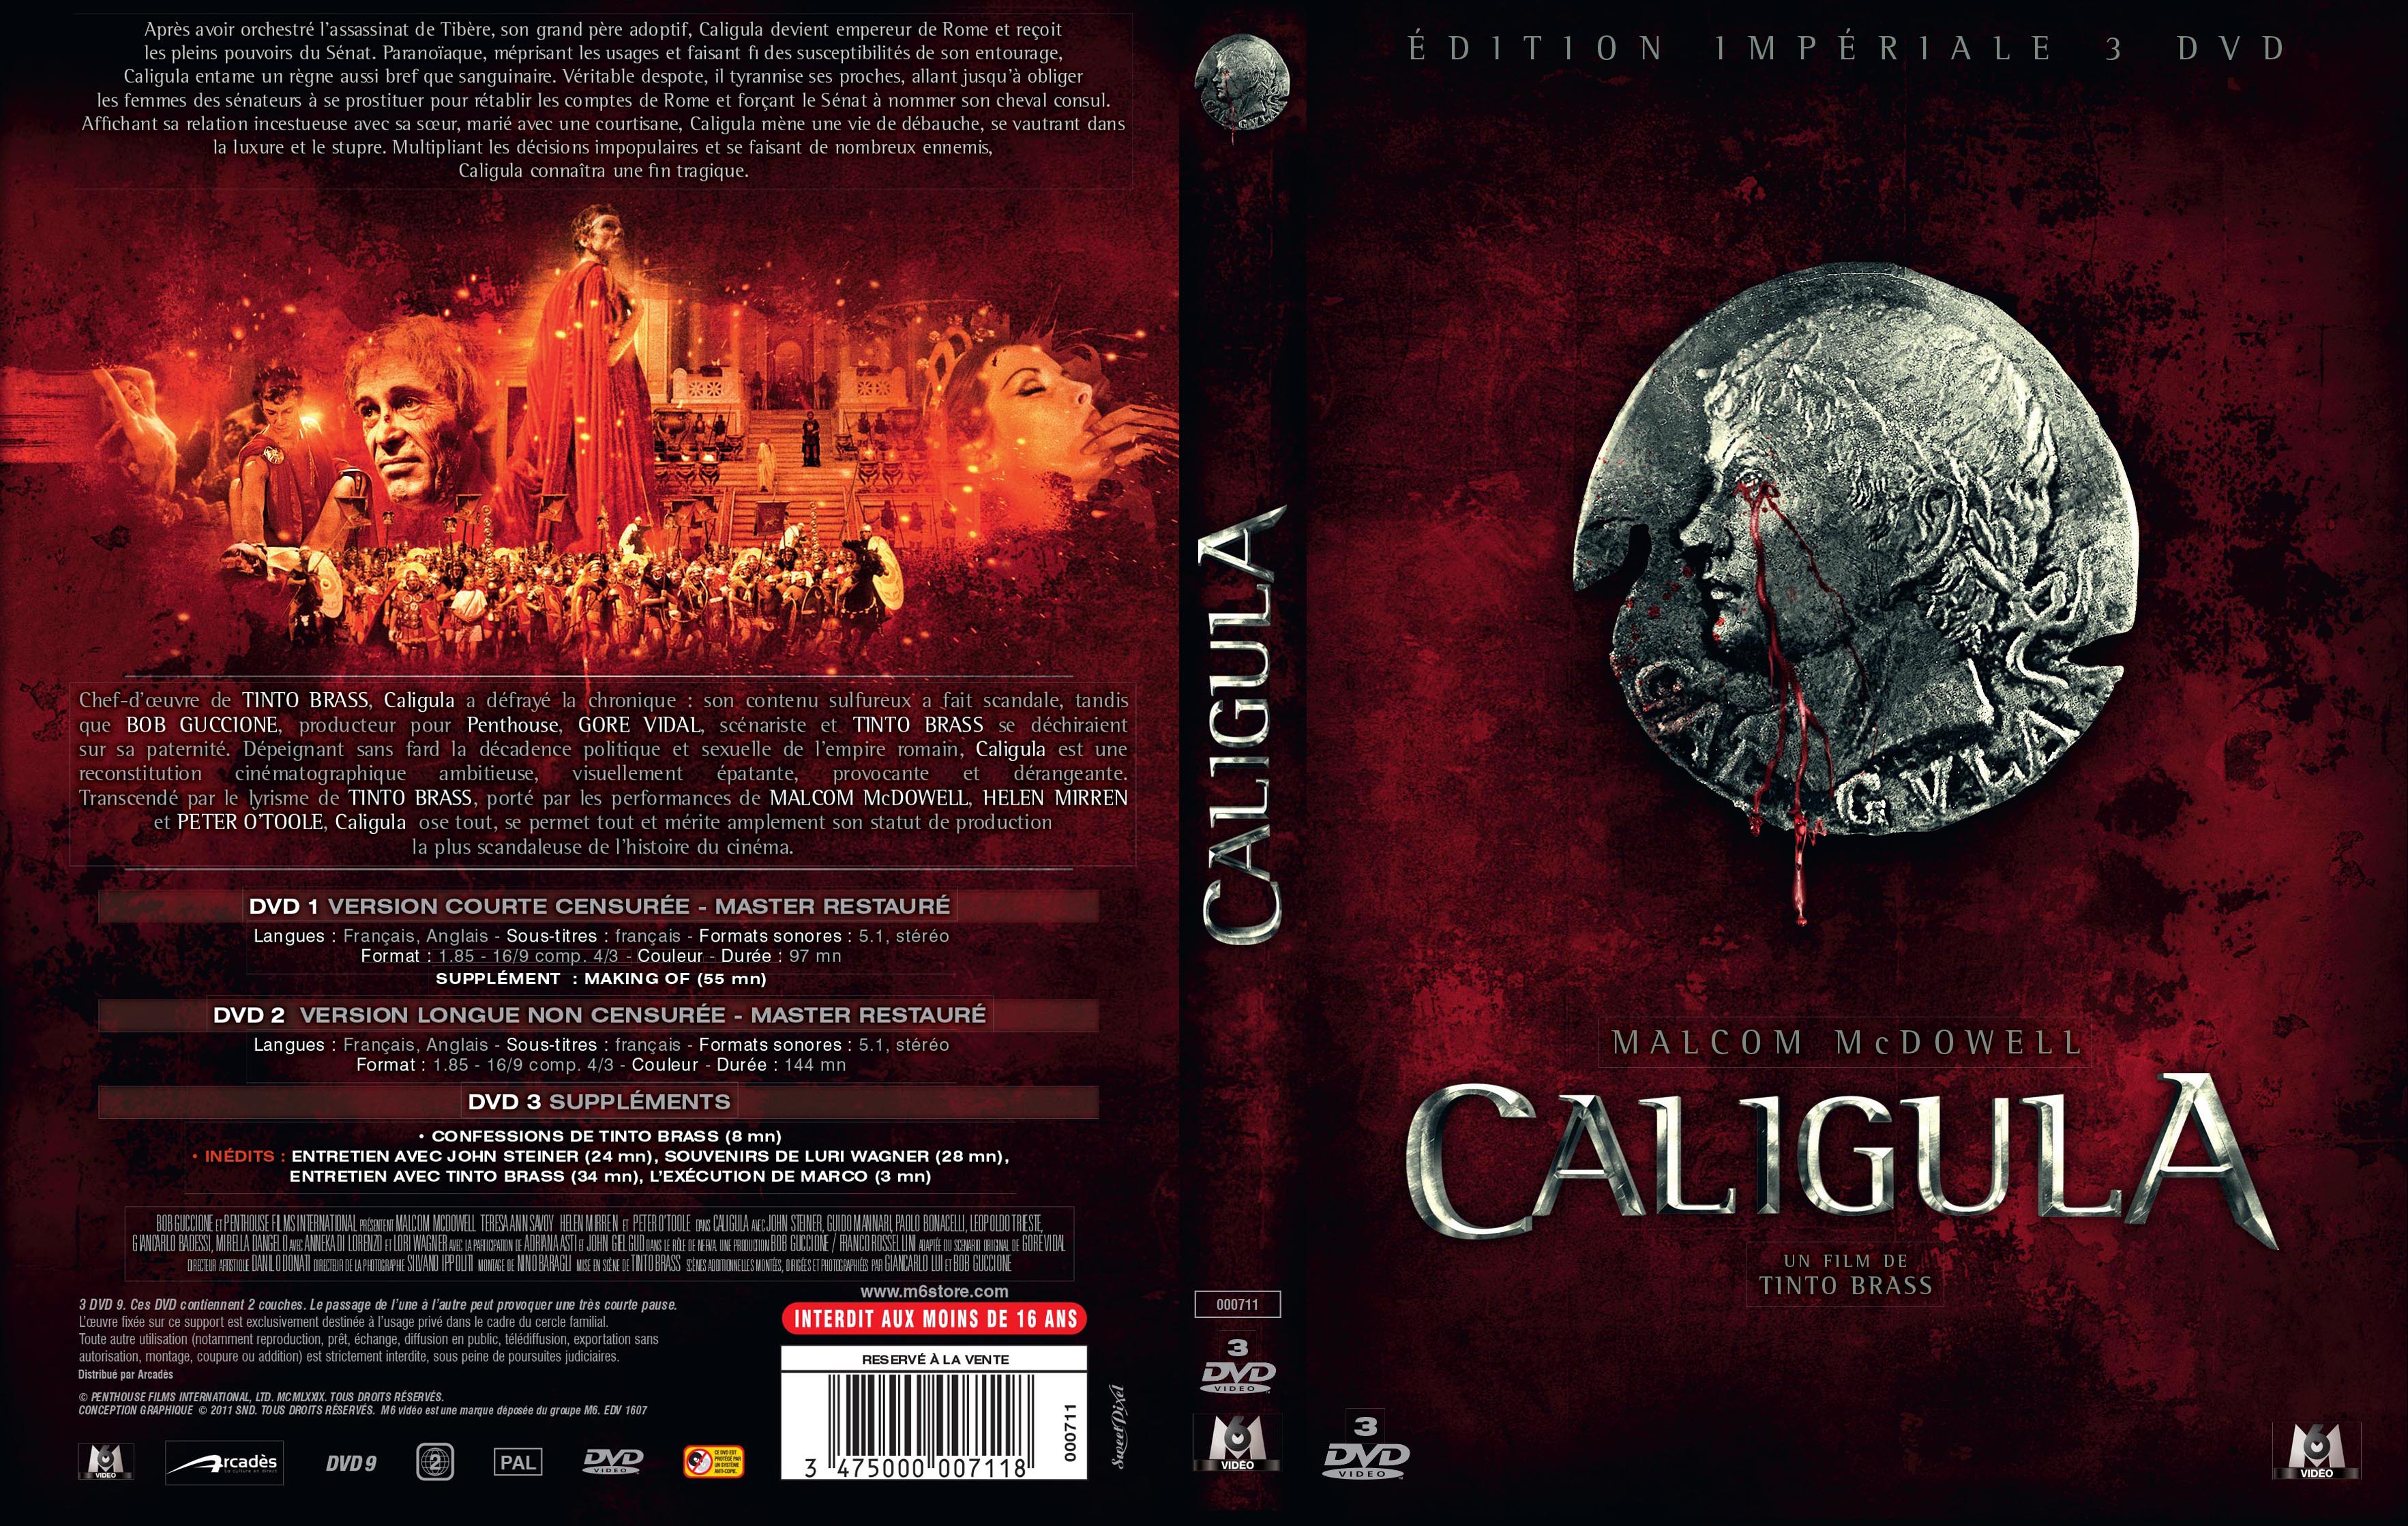 Jaquette DVD Caligula v3